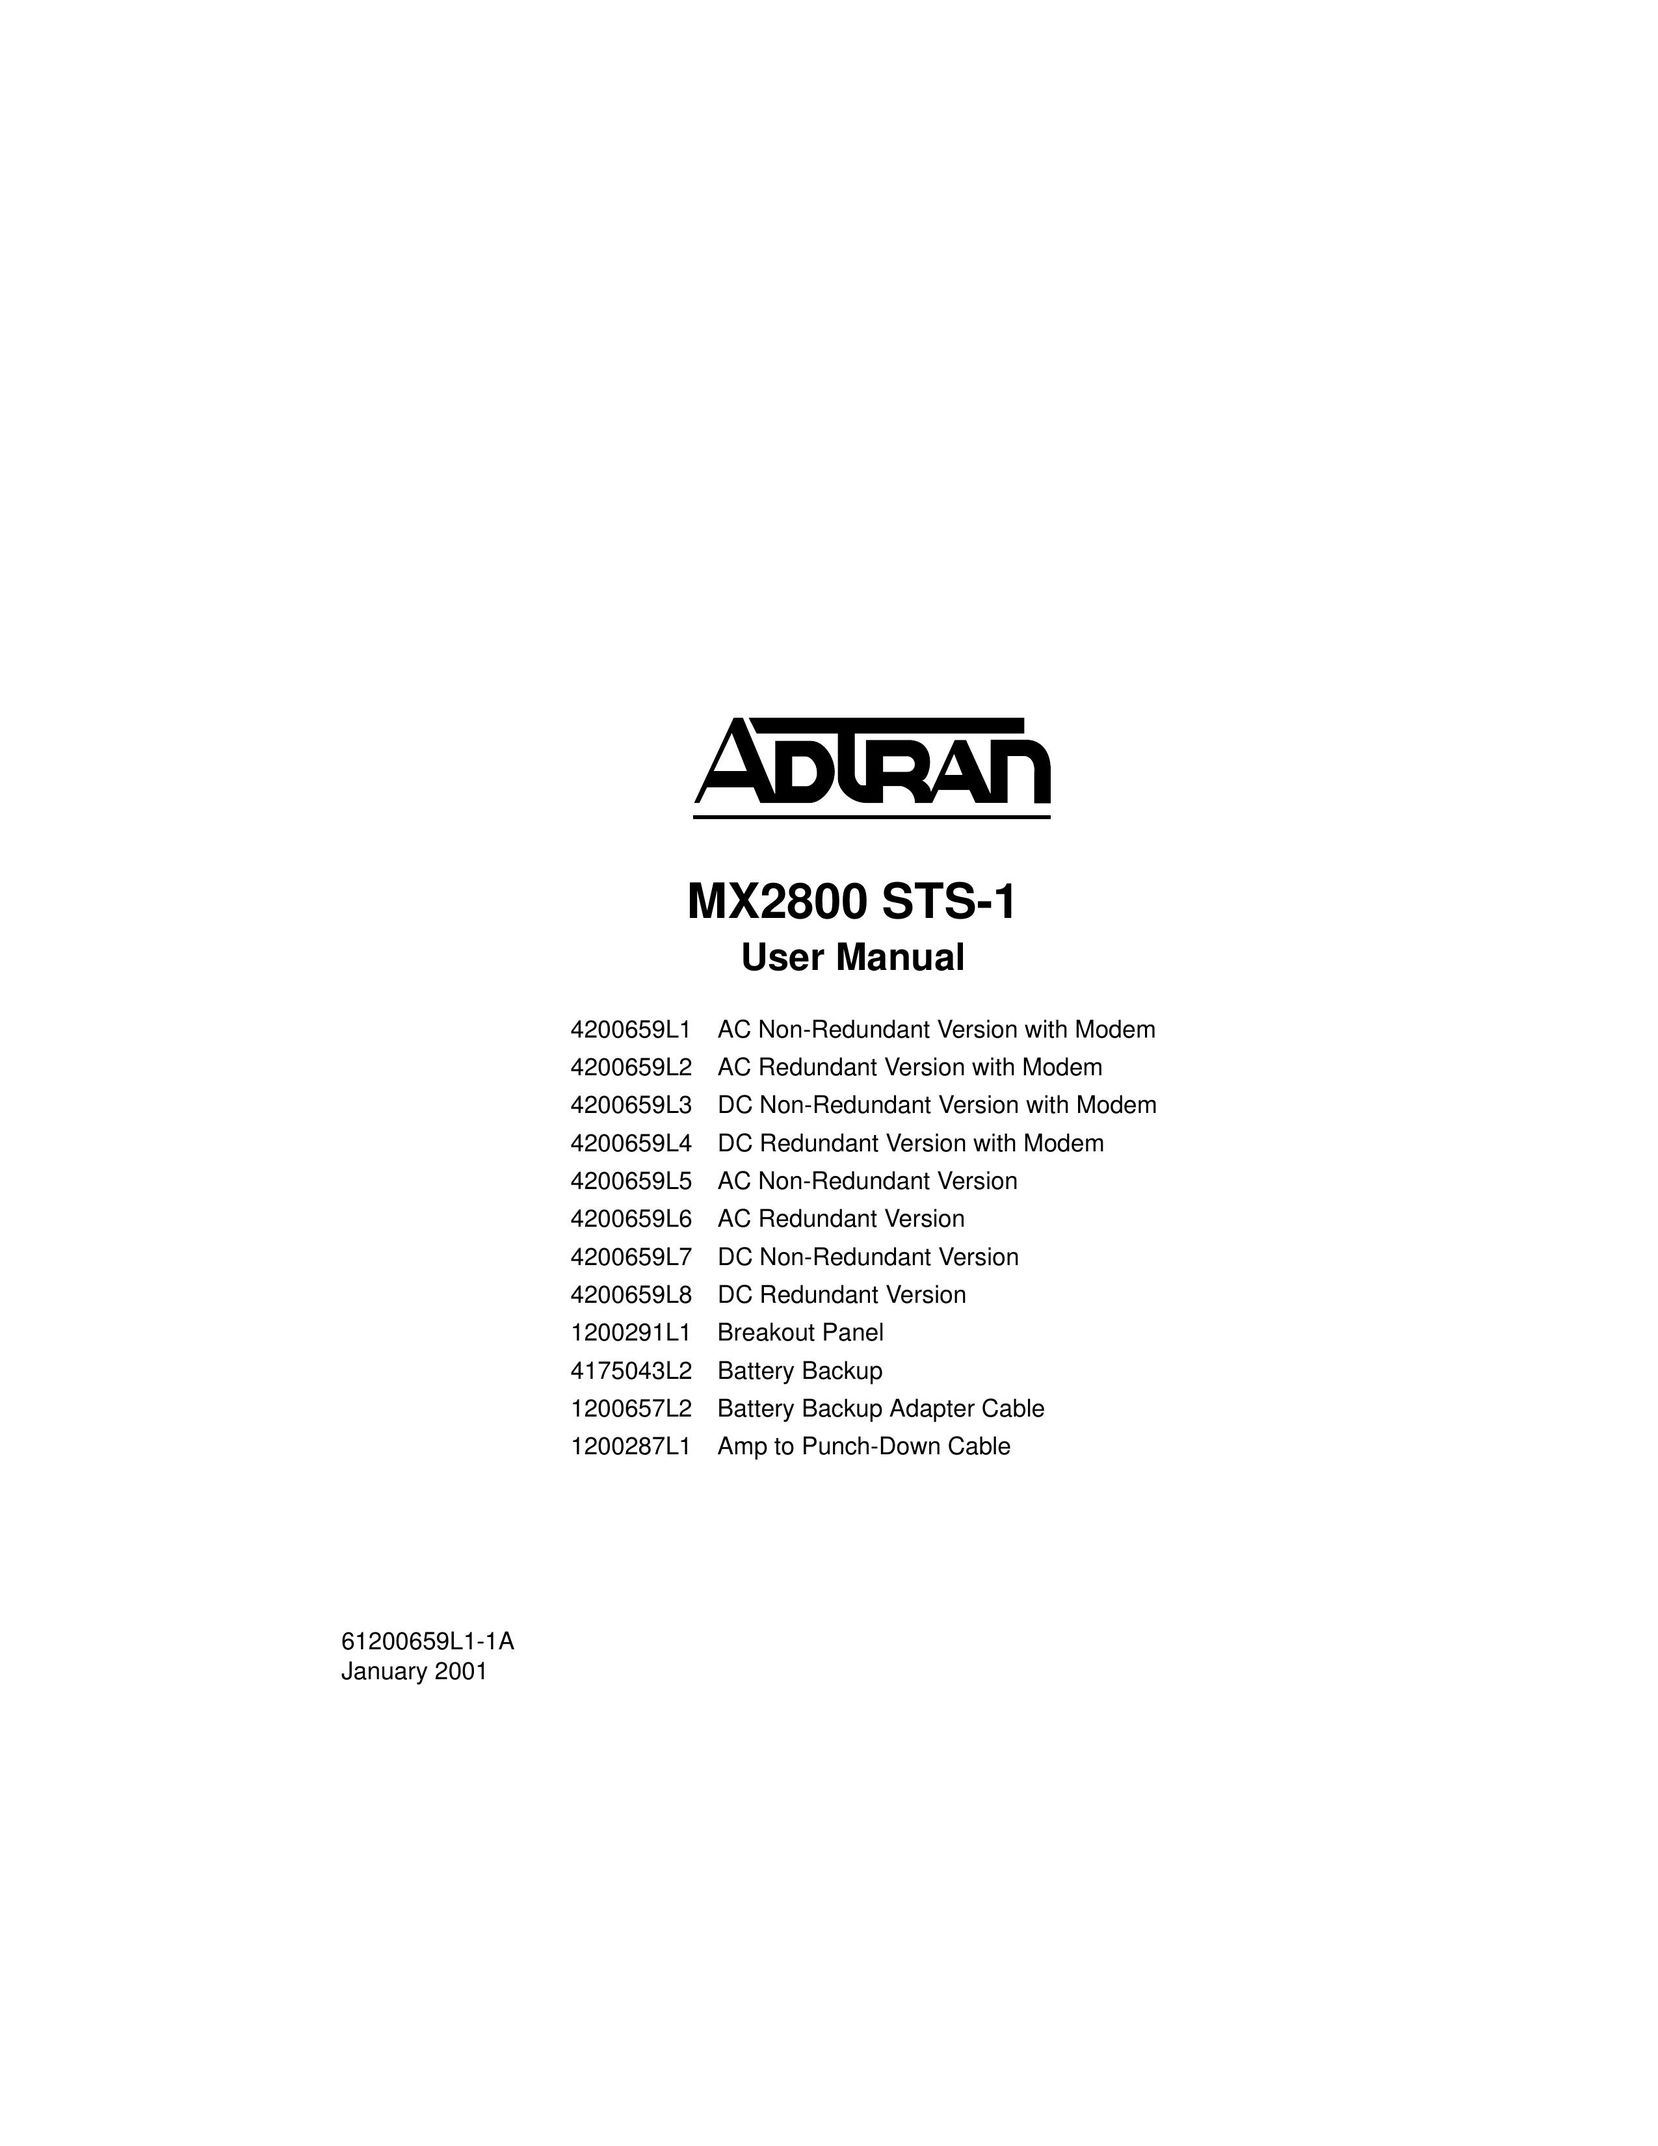 ADTRAN 4200659L6 Switch User Manual